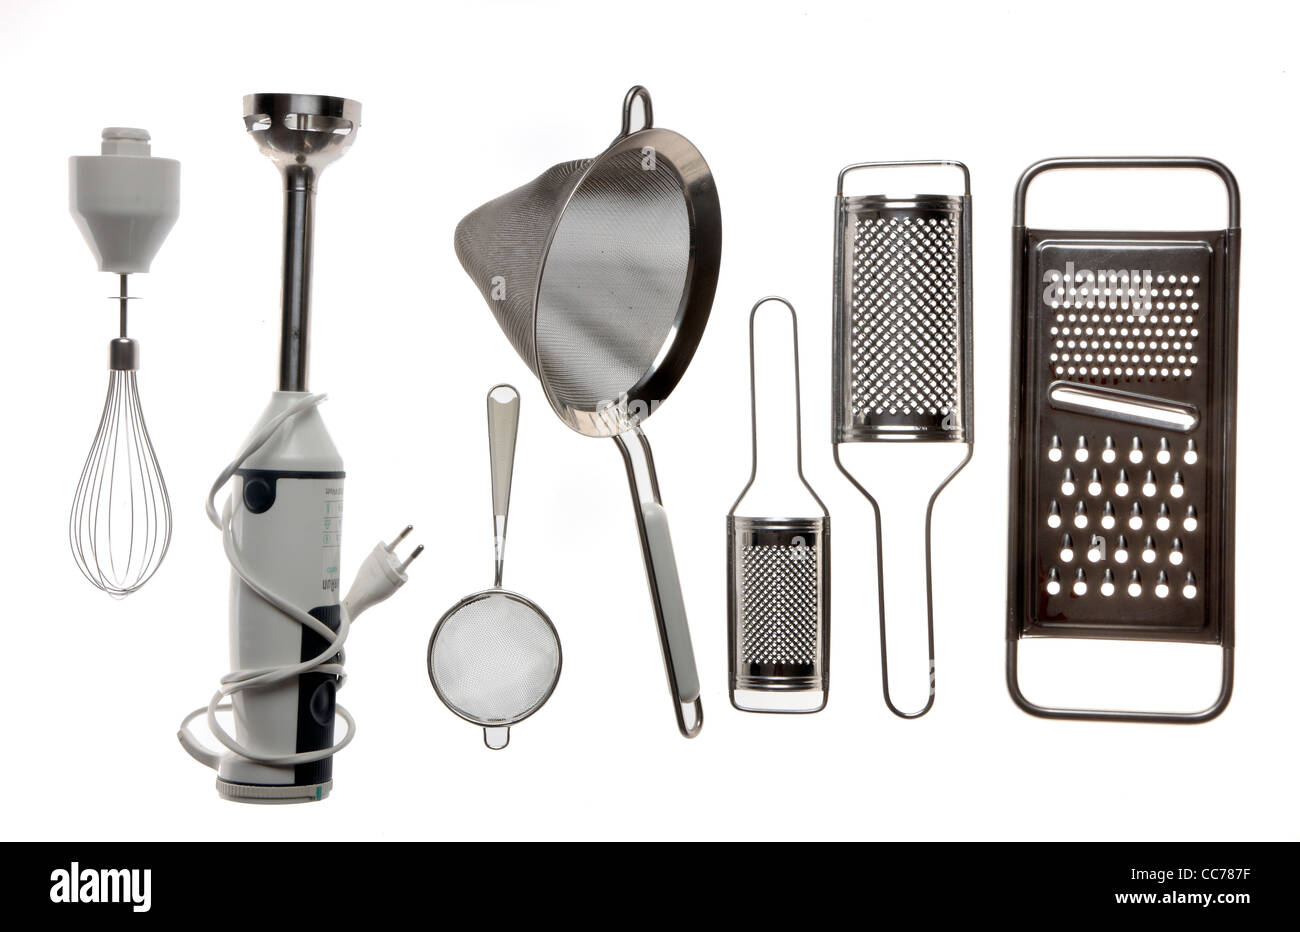 Kitchen Essentials: What Is a Mixer?